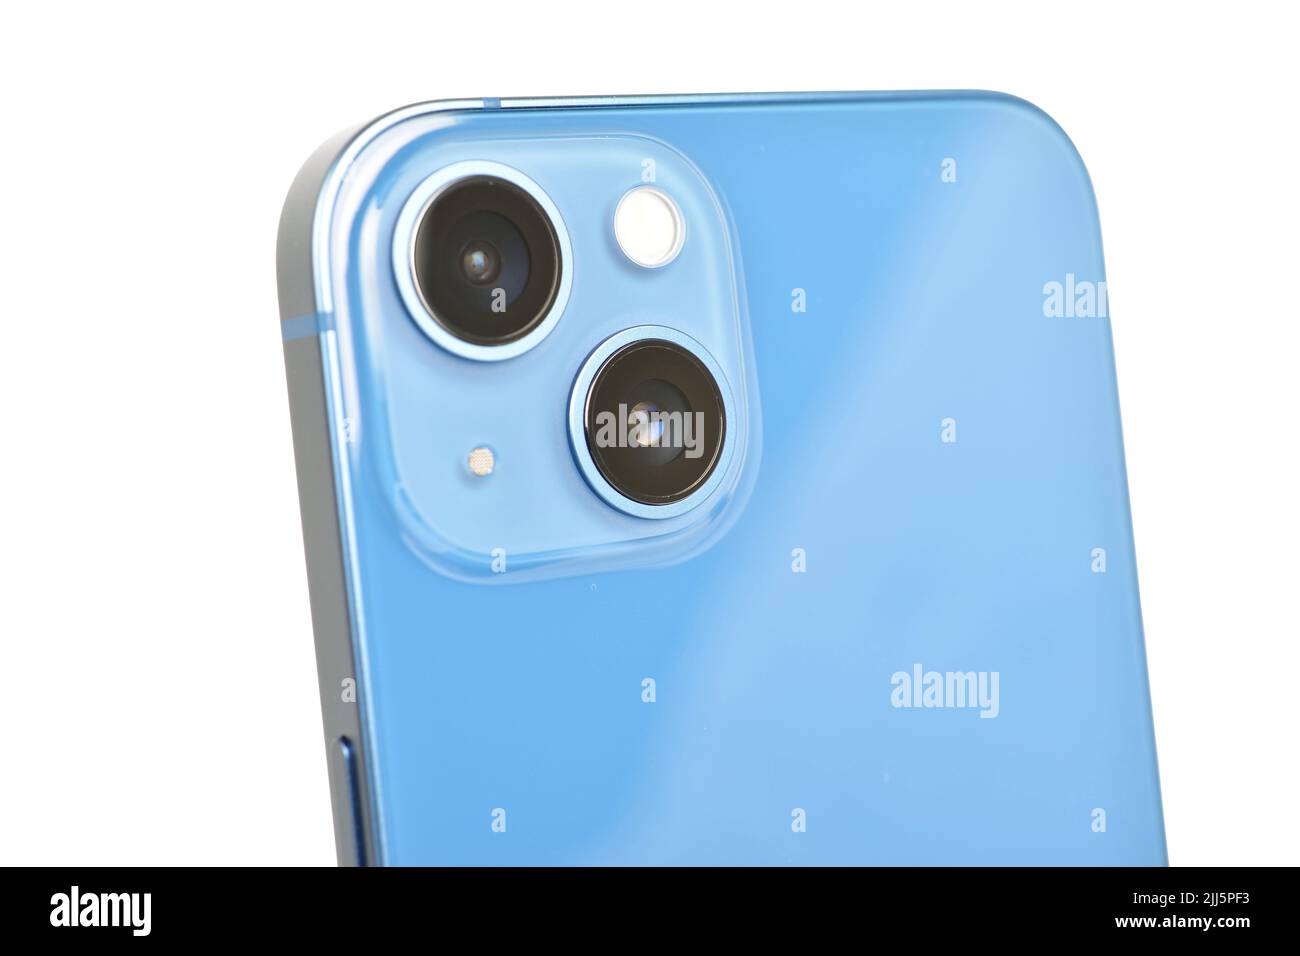 Fotocamera per smartphone a doppio obiettivo isolata su sfondo bianco con percorso di ritaglio Foto Stock